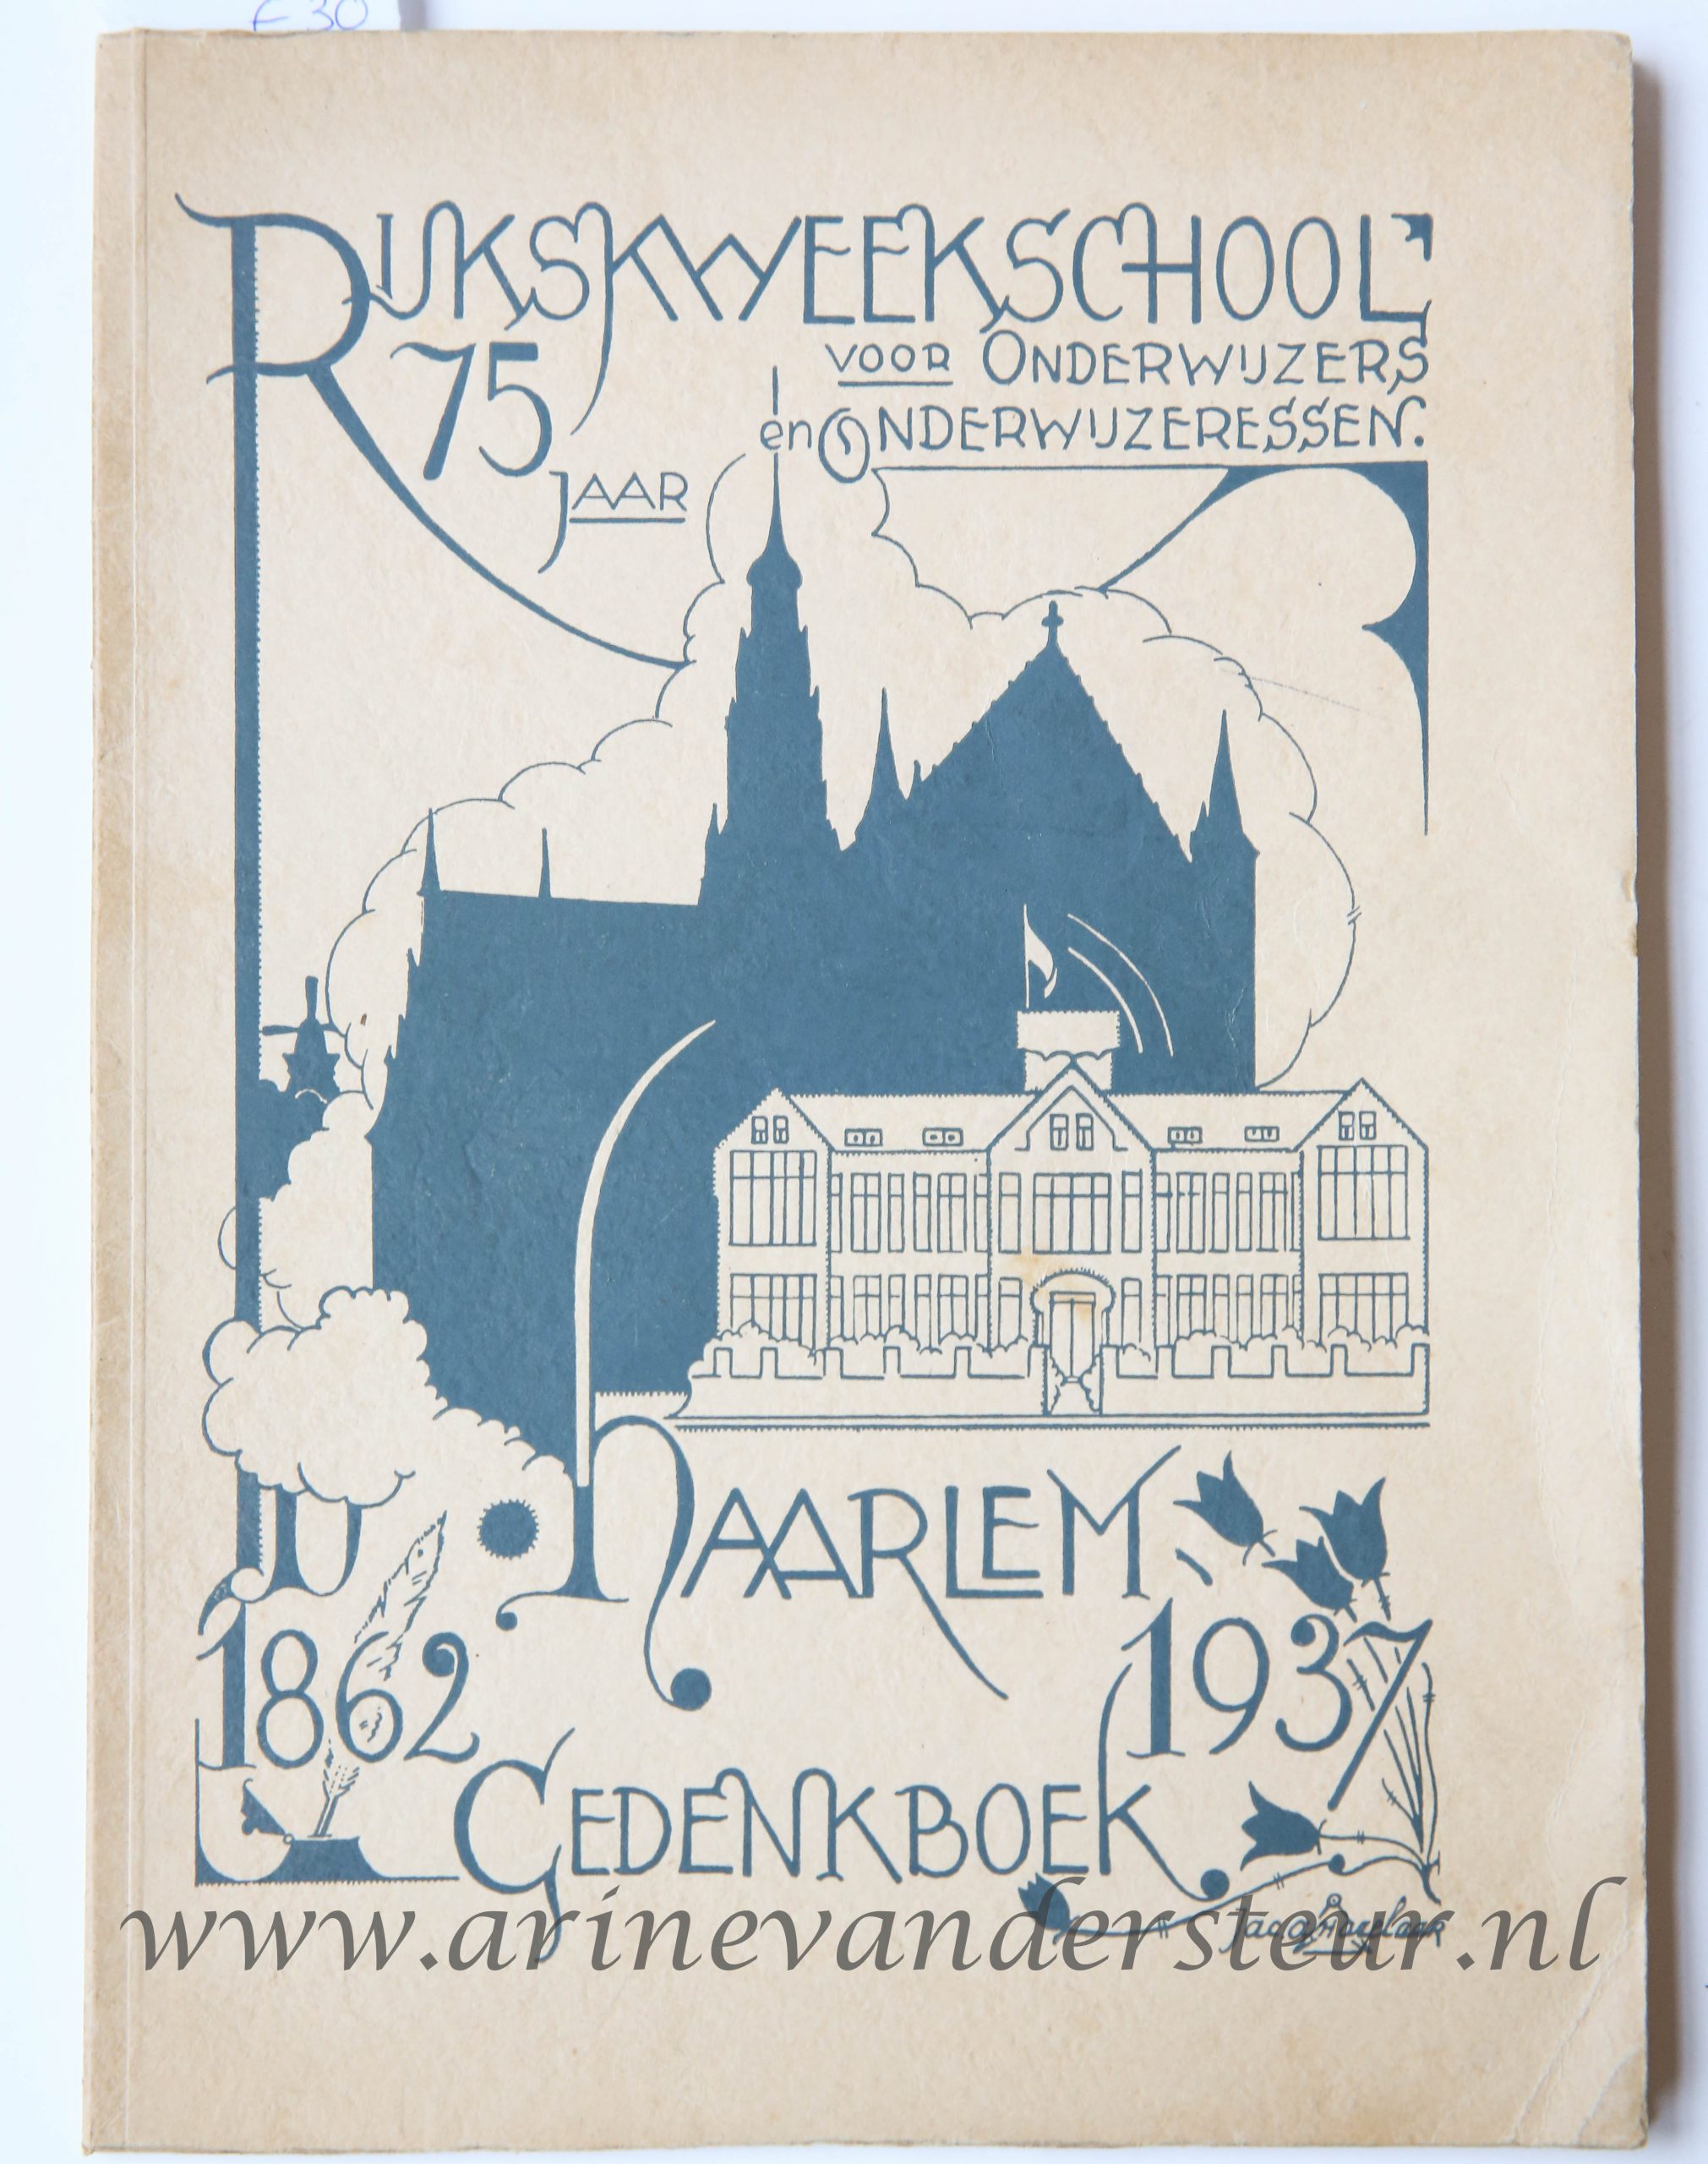 Rijkskweekschool voor onderwijzers en onderwijzeressen, 75 jaar, Haarlem, 1862-1937, gedrukt bij J.B. Wolters te Groningen, 105 pp. Illustrated with black and white illustrations.